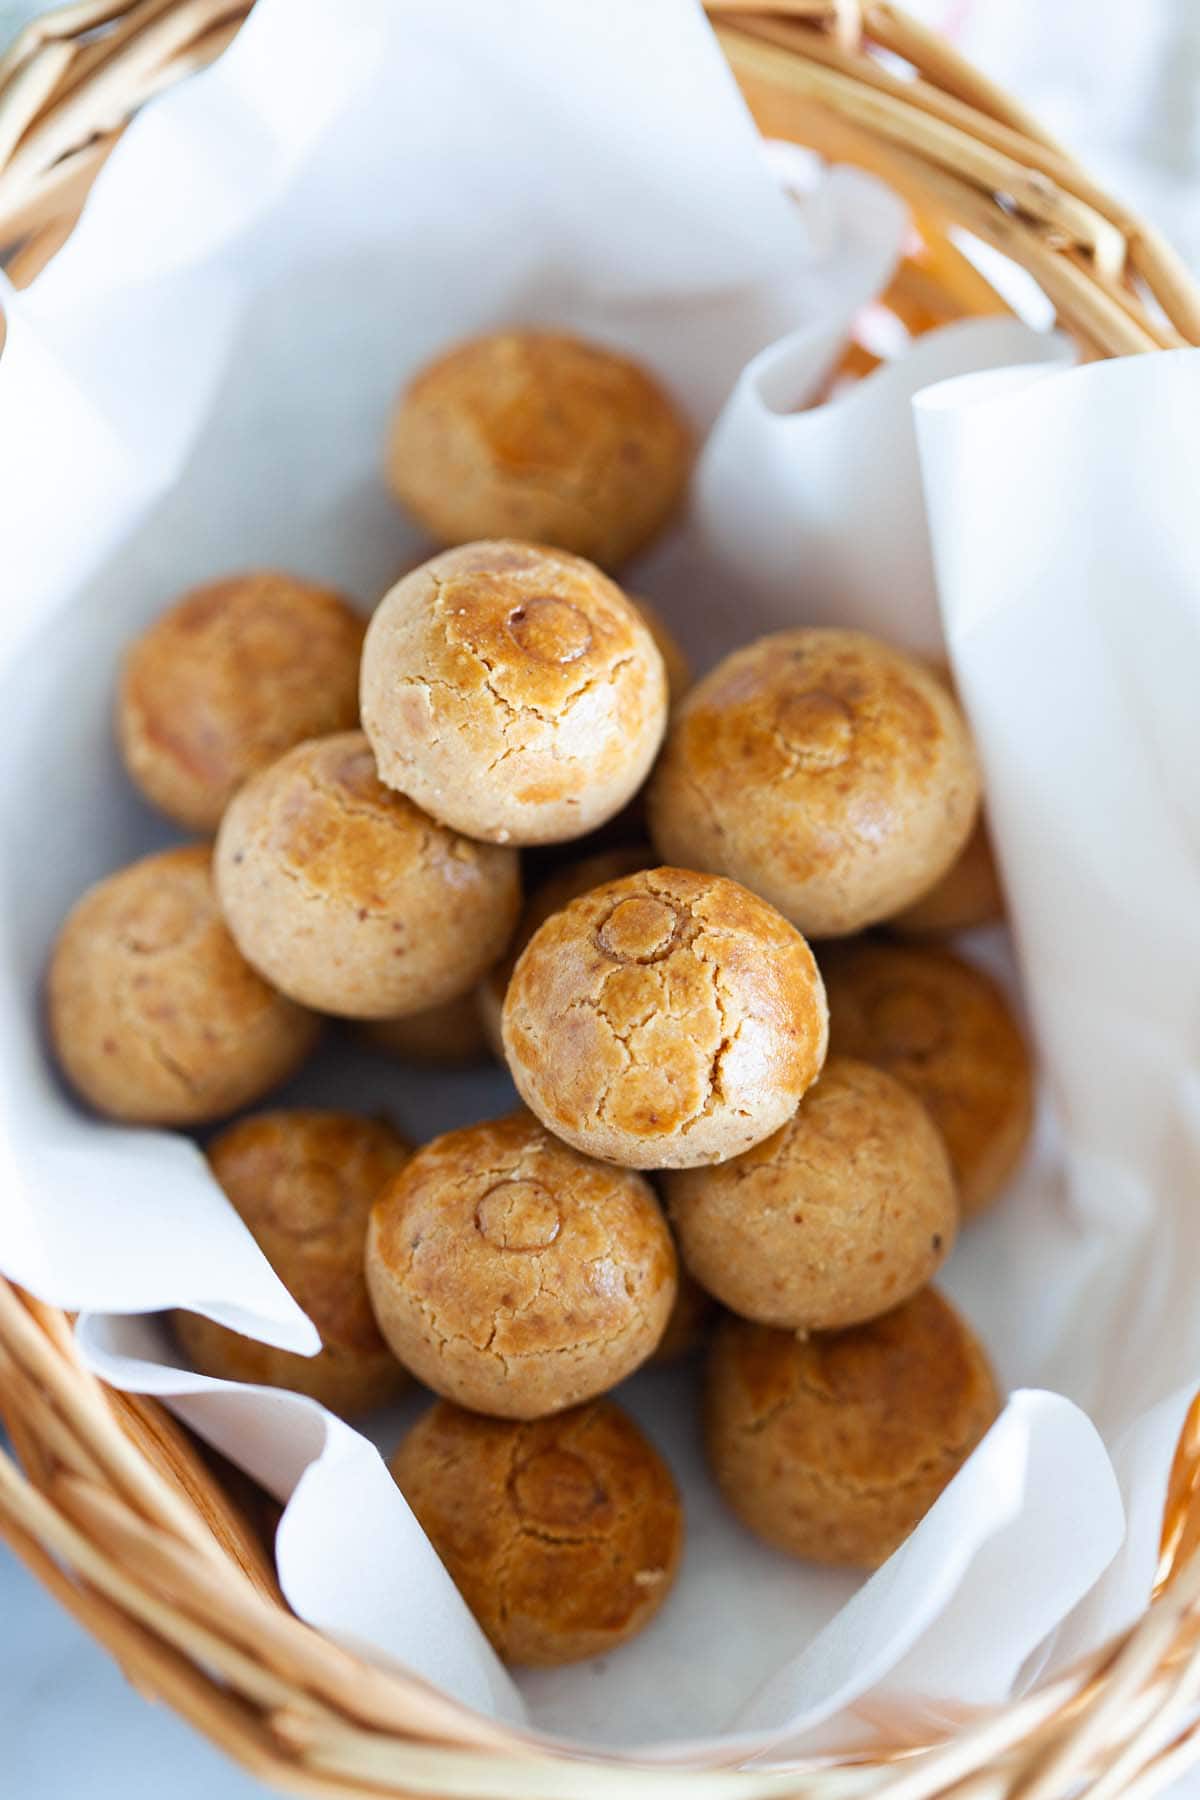 Peanut cookies in a basket.